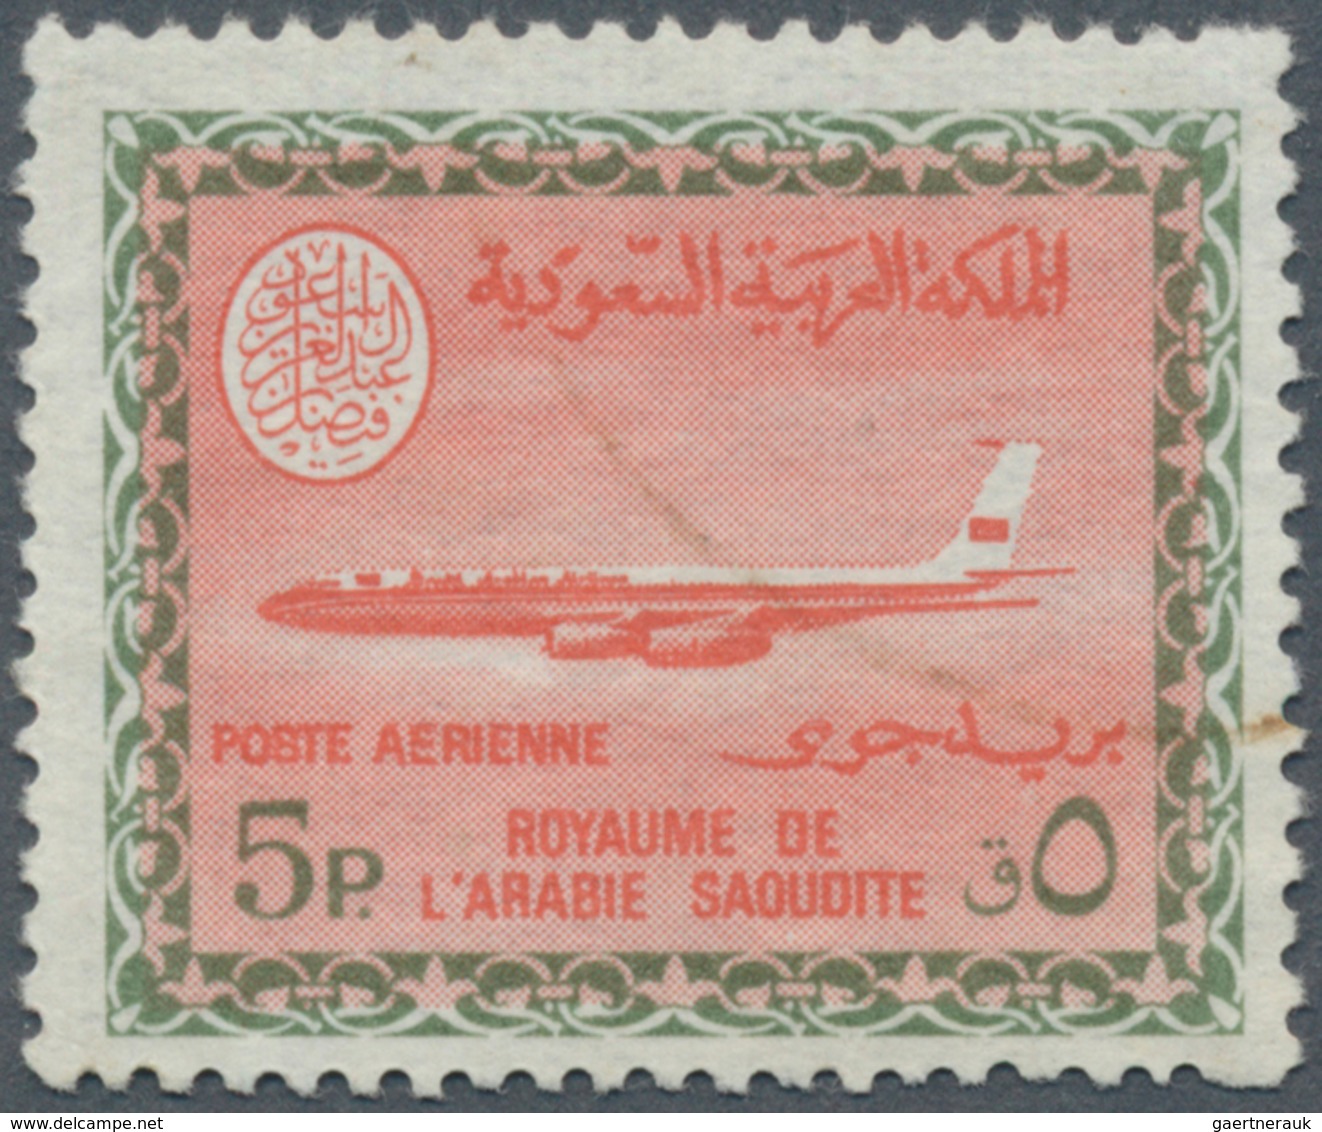 Saudi-Arabien: 1975, Boeing B720 Airmail With Cartouche Of King Faisal, Unwmkd. 5 Pia., Used, Rarity - Saudi-Arabien